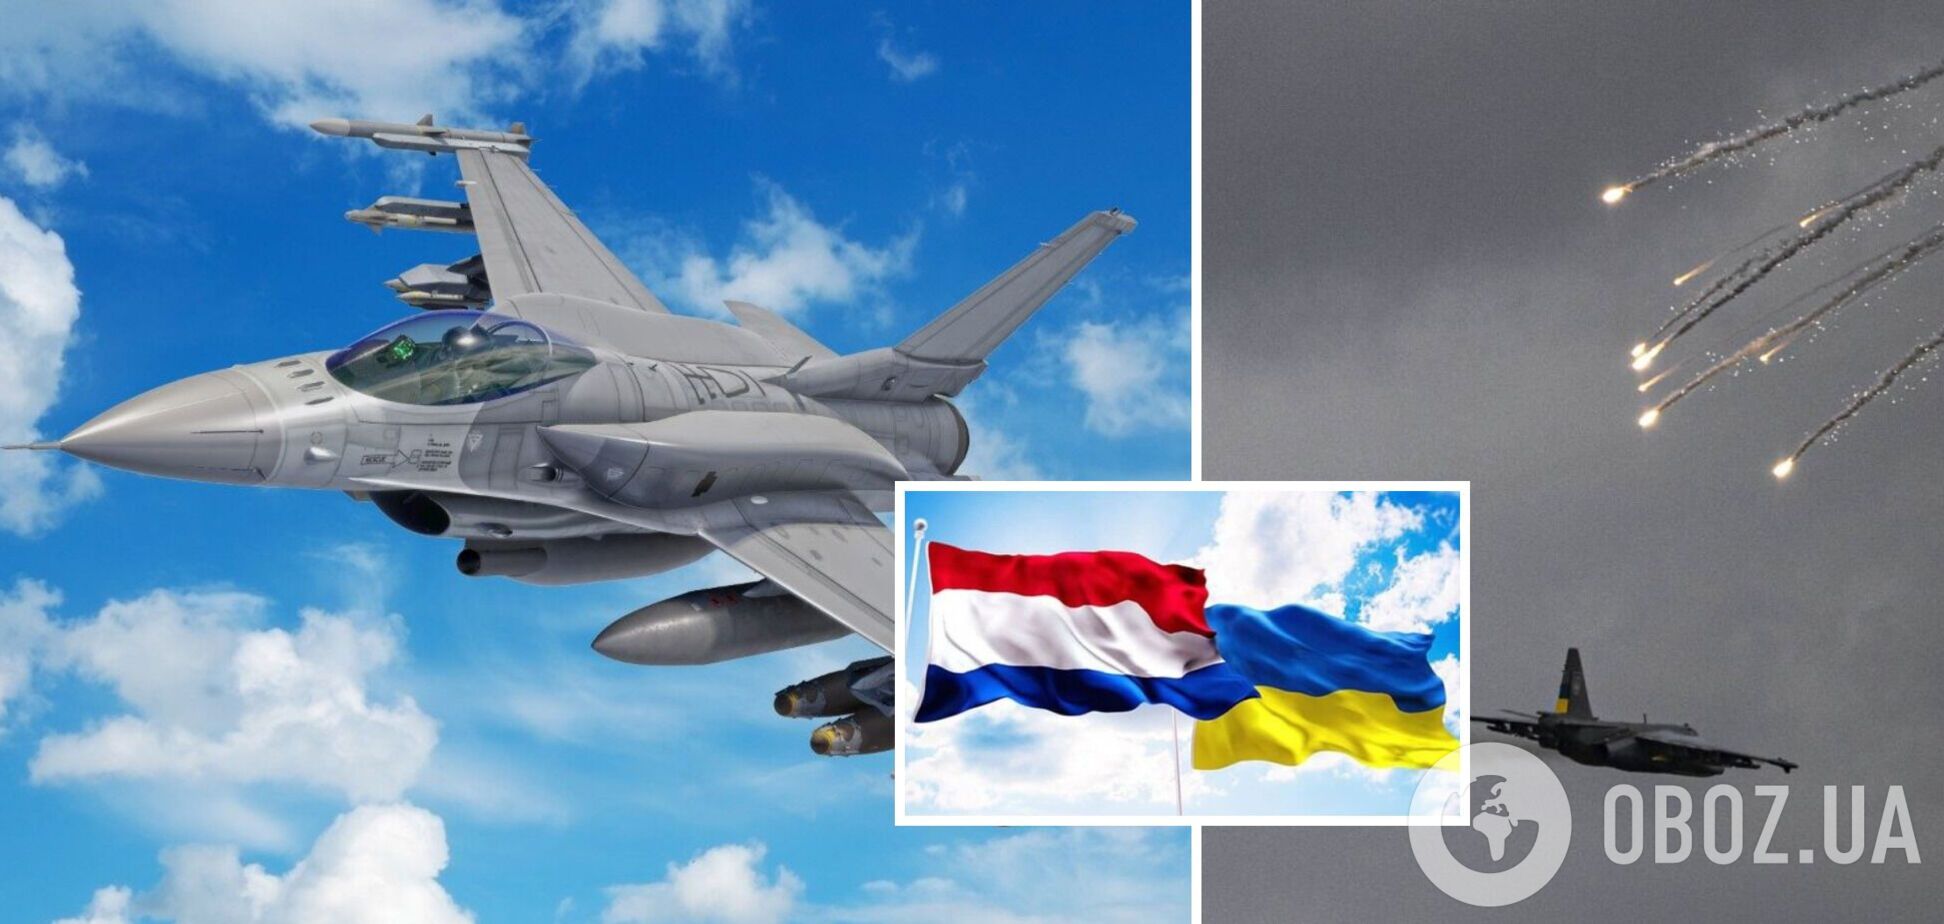 Нідерланди розглянуть прохання України про винищувачі F-16, якщо отримають такий запит,  – прем'єр-міністр Рютте